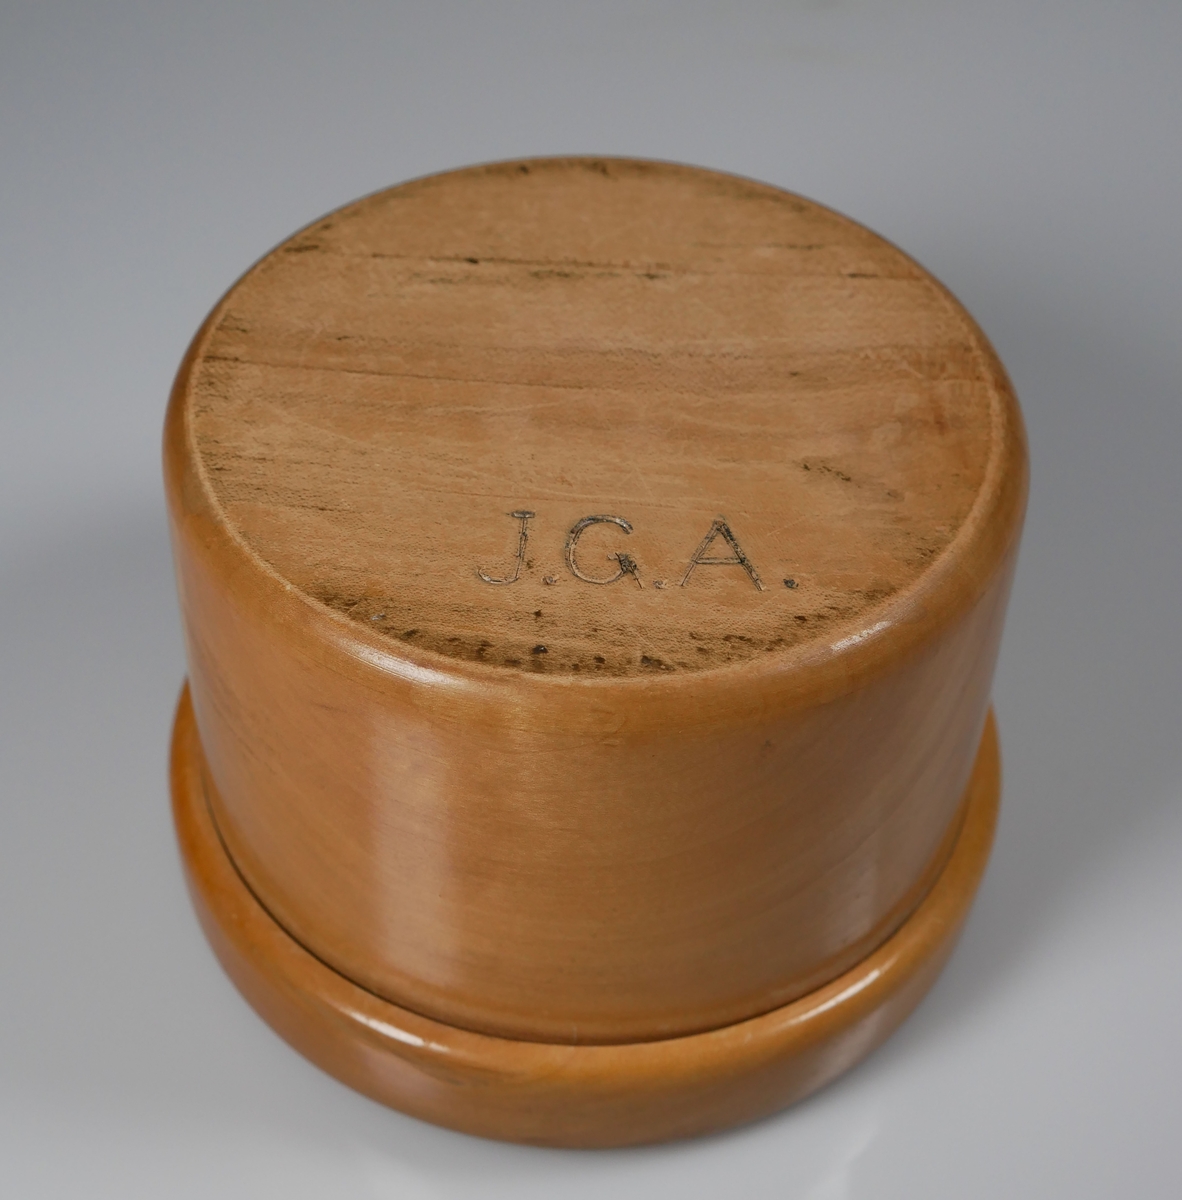 Träask med lock. Locket något sprucket.  Undertill märkt J.G.A. = J.G. Axelssons snickeriverkstad som var verksamt mellan 1894-1966 i Alingsås.